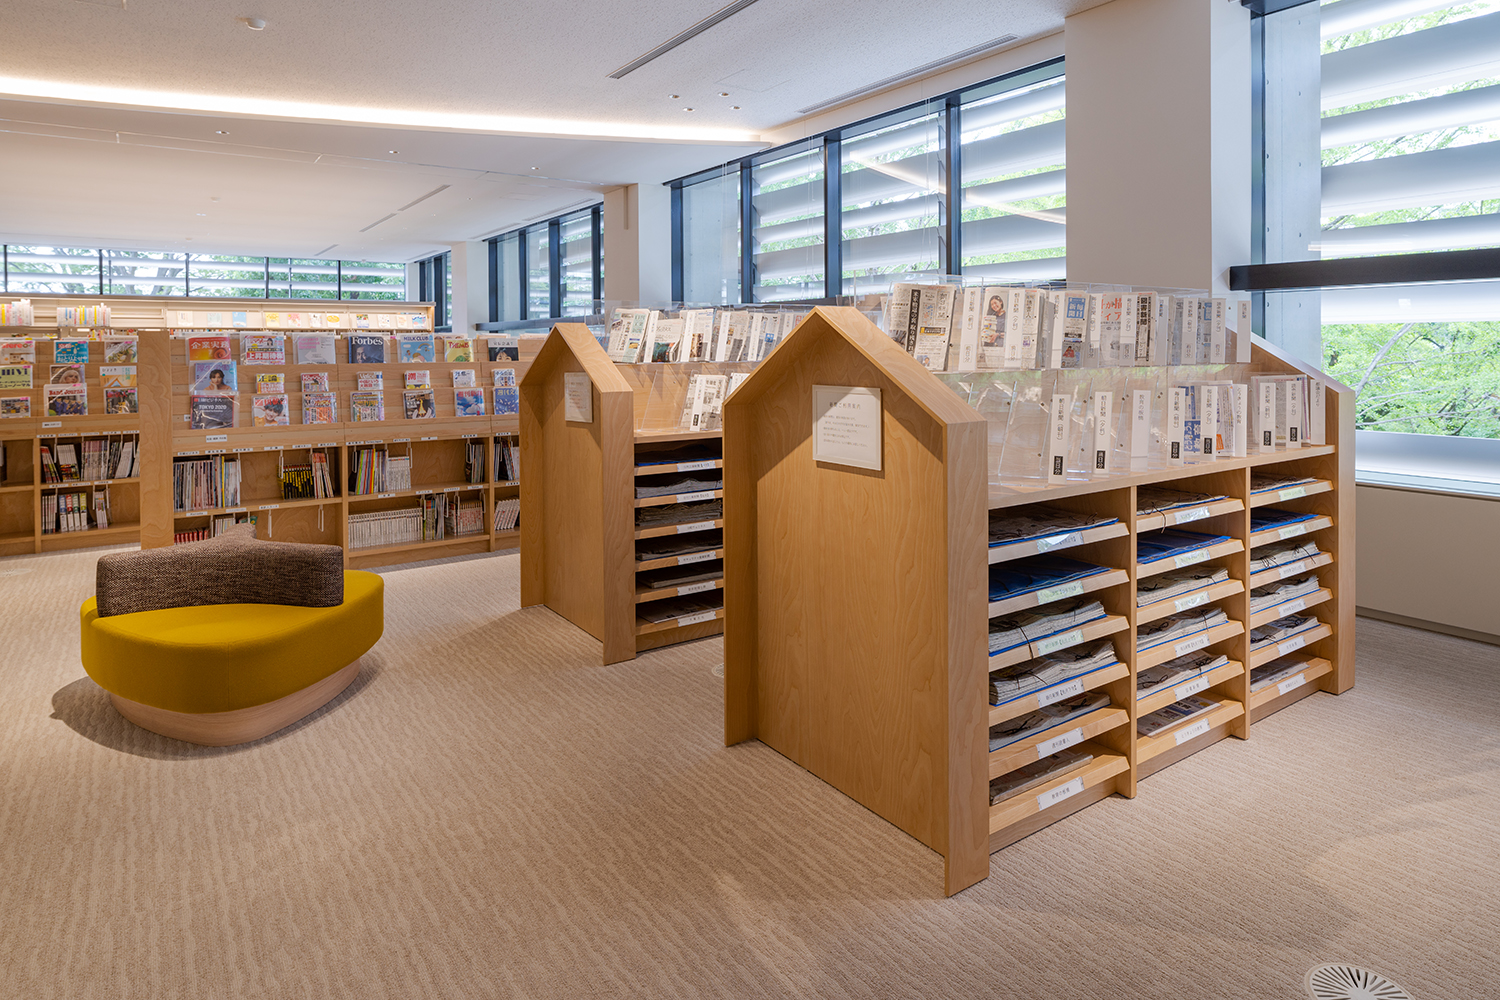 中央 板橋 図書館 区立 上板橋駅近くの平和公園内にオープンした新しい「板橋区立中央図書館」に行ってきた。